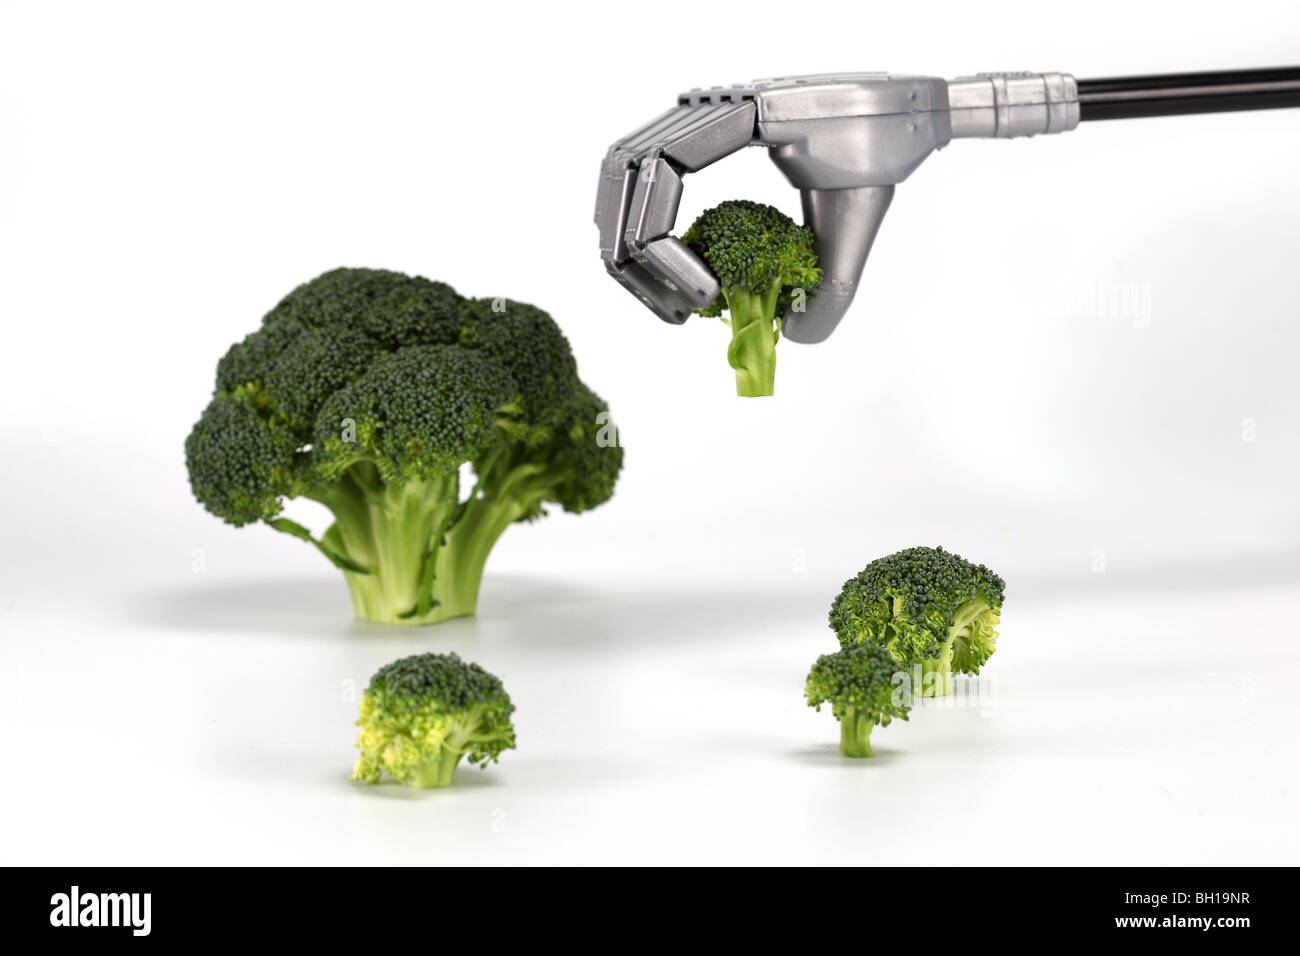 Broccoli Robot grab cibo mano le dita del braccio tenere il dito tenendo delicato con cura attenta industriale la tecnologia della macchina Foto Stock